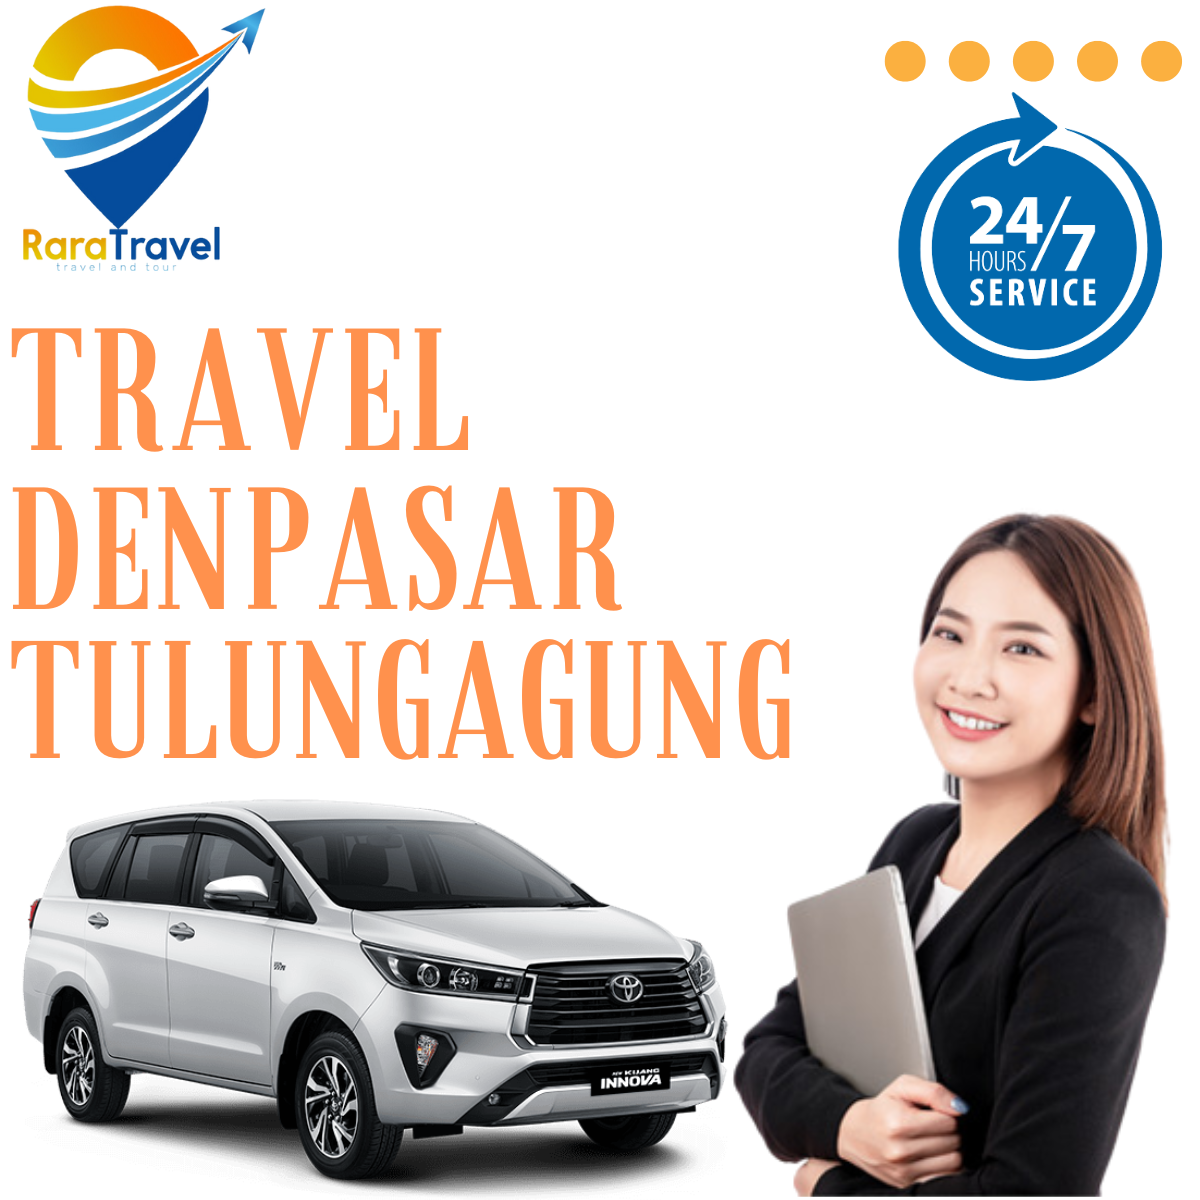 Travel Denpasar Tulungagung, Harga Tiket Murah, Door to Door